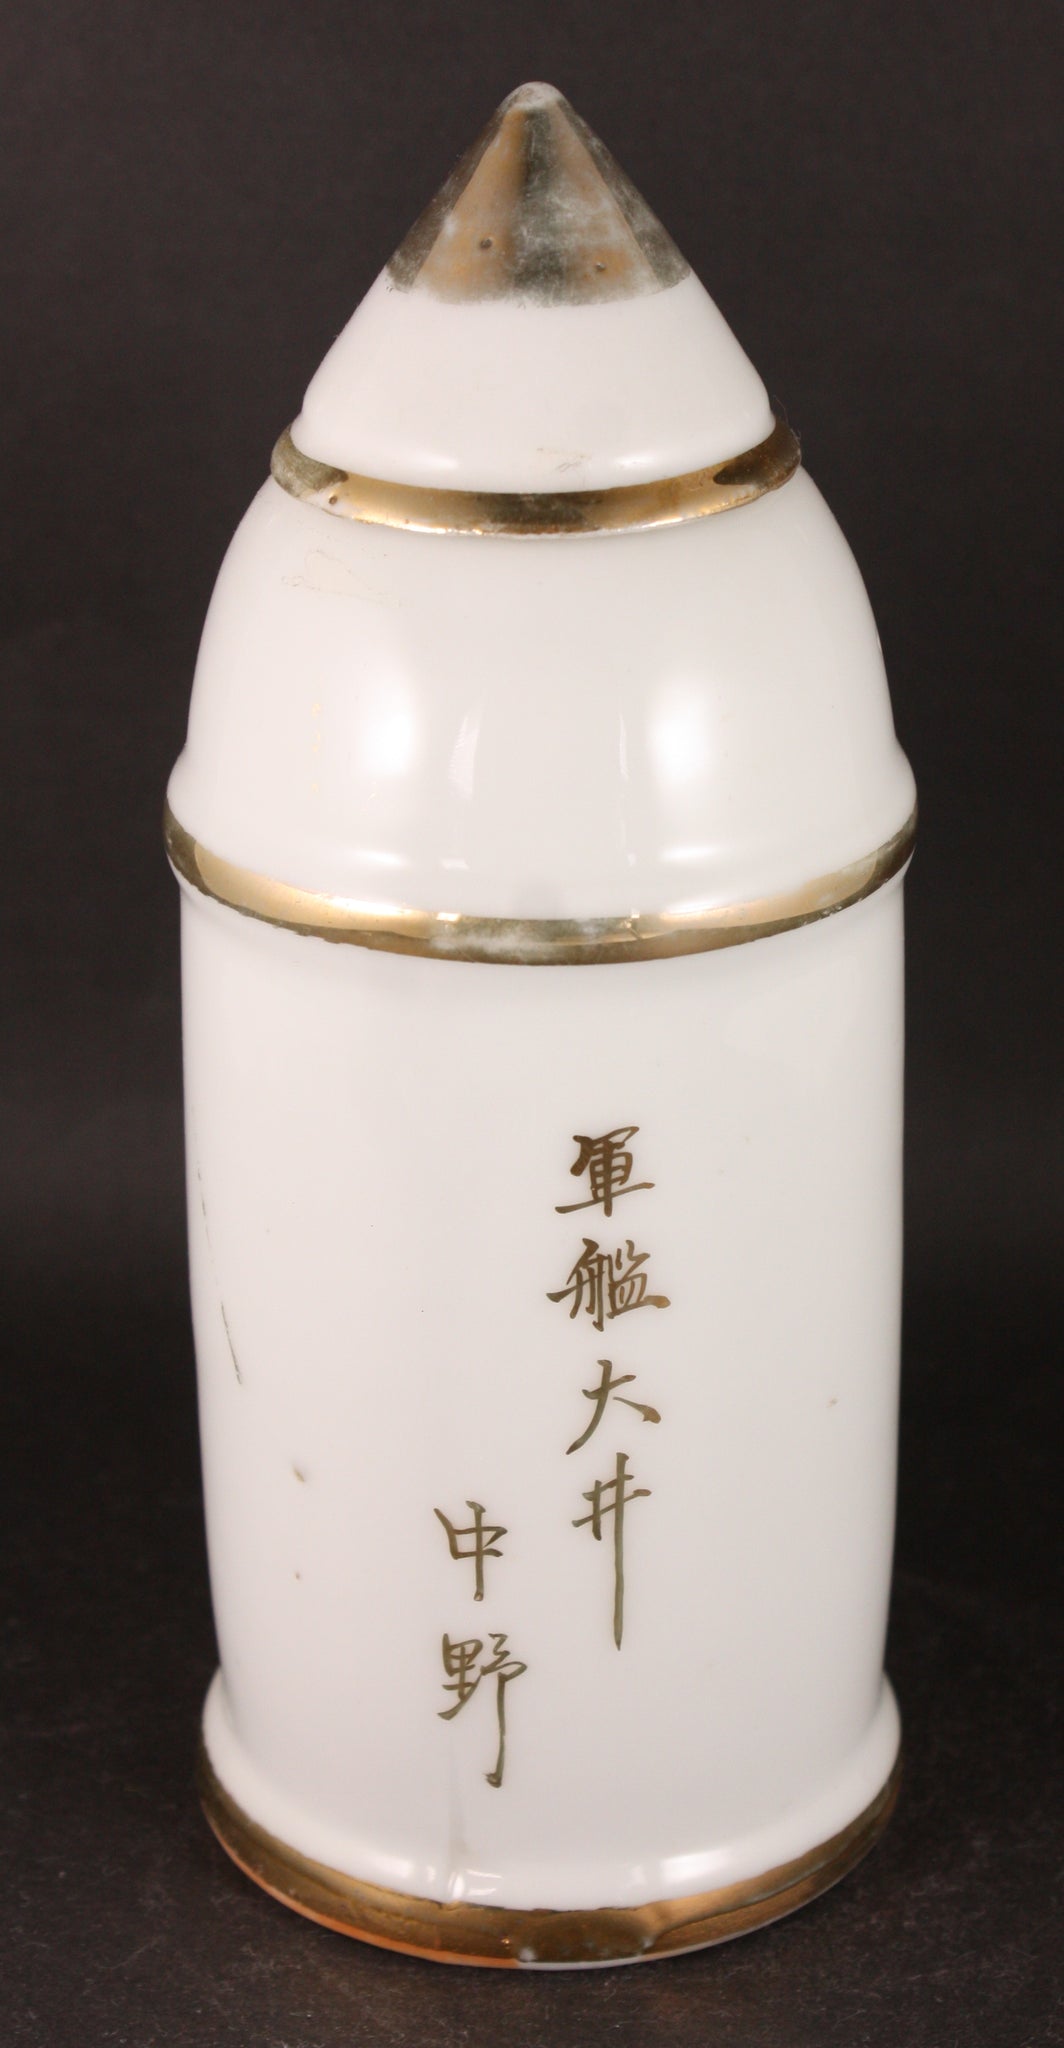 Very Rare Antique Japanese Military 1932 Shanghai Incident Cruiser Oi Shell Shaped Sake Bottle